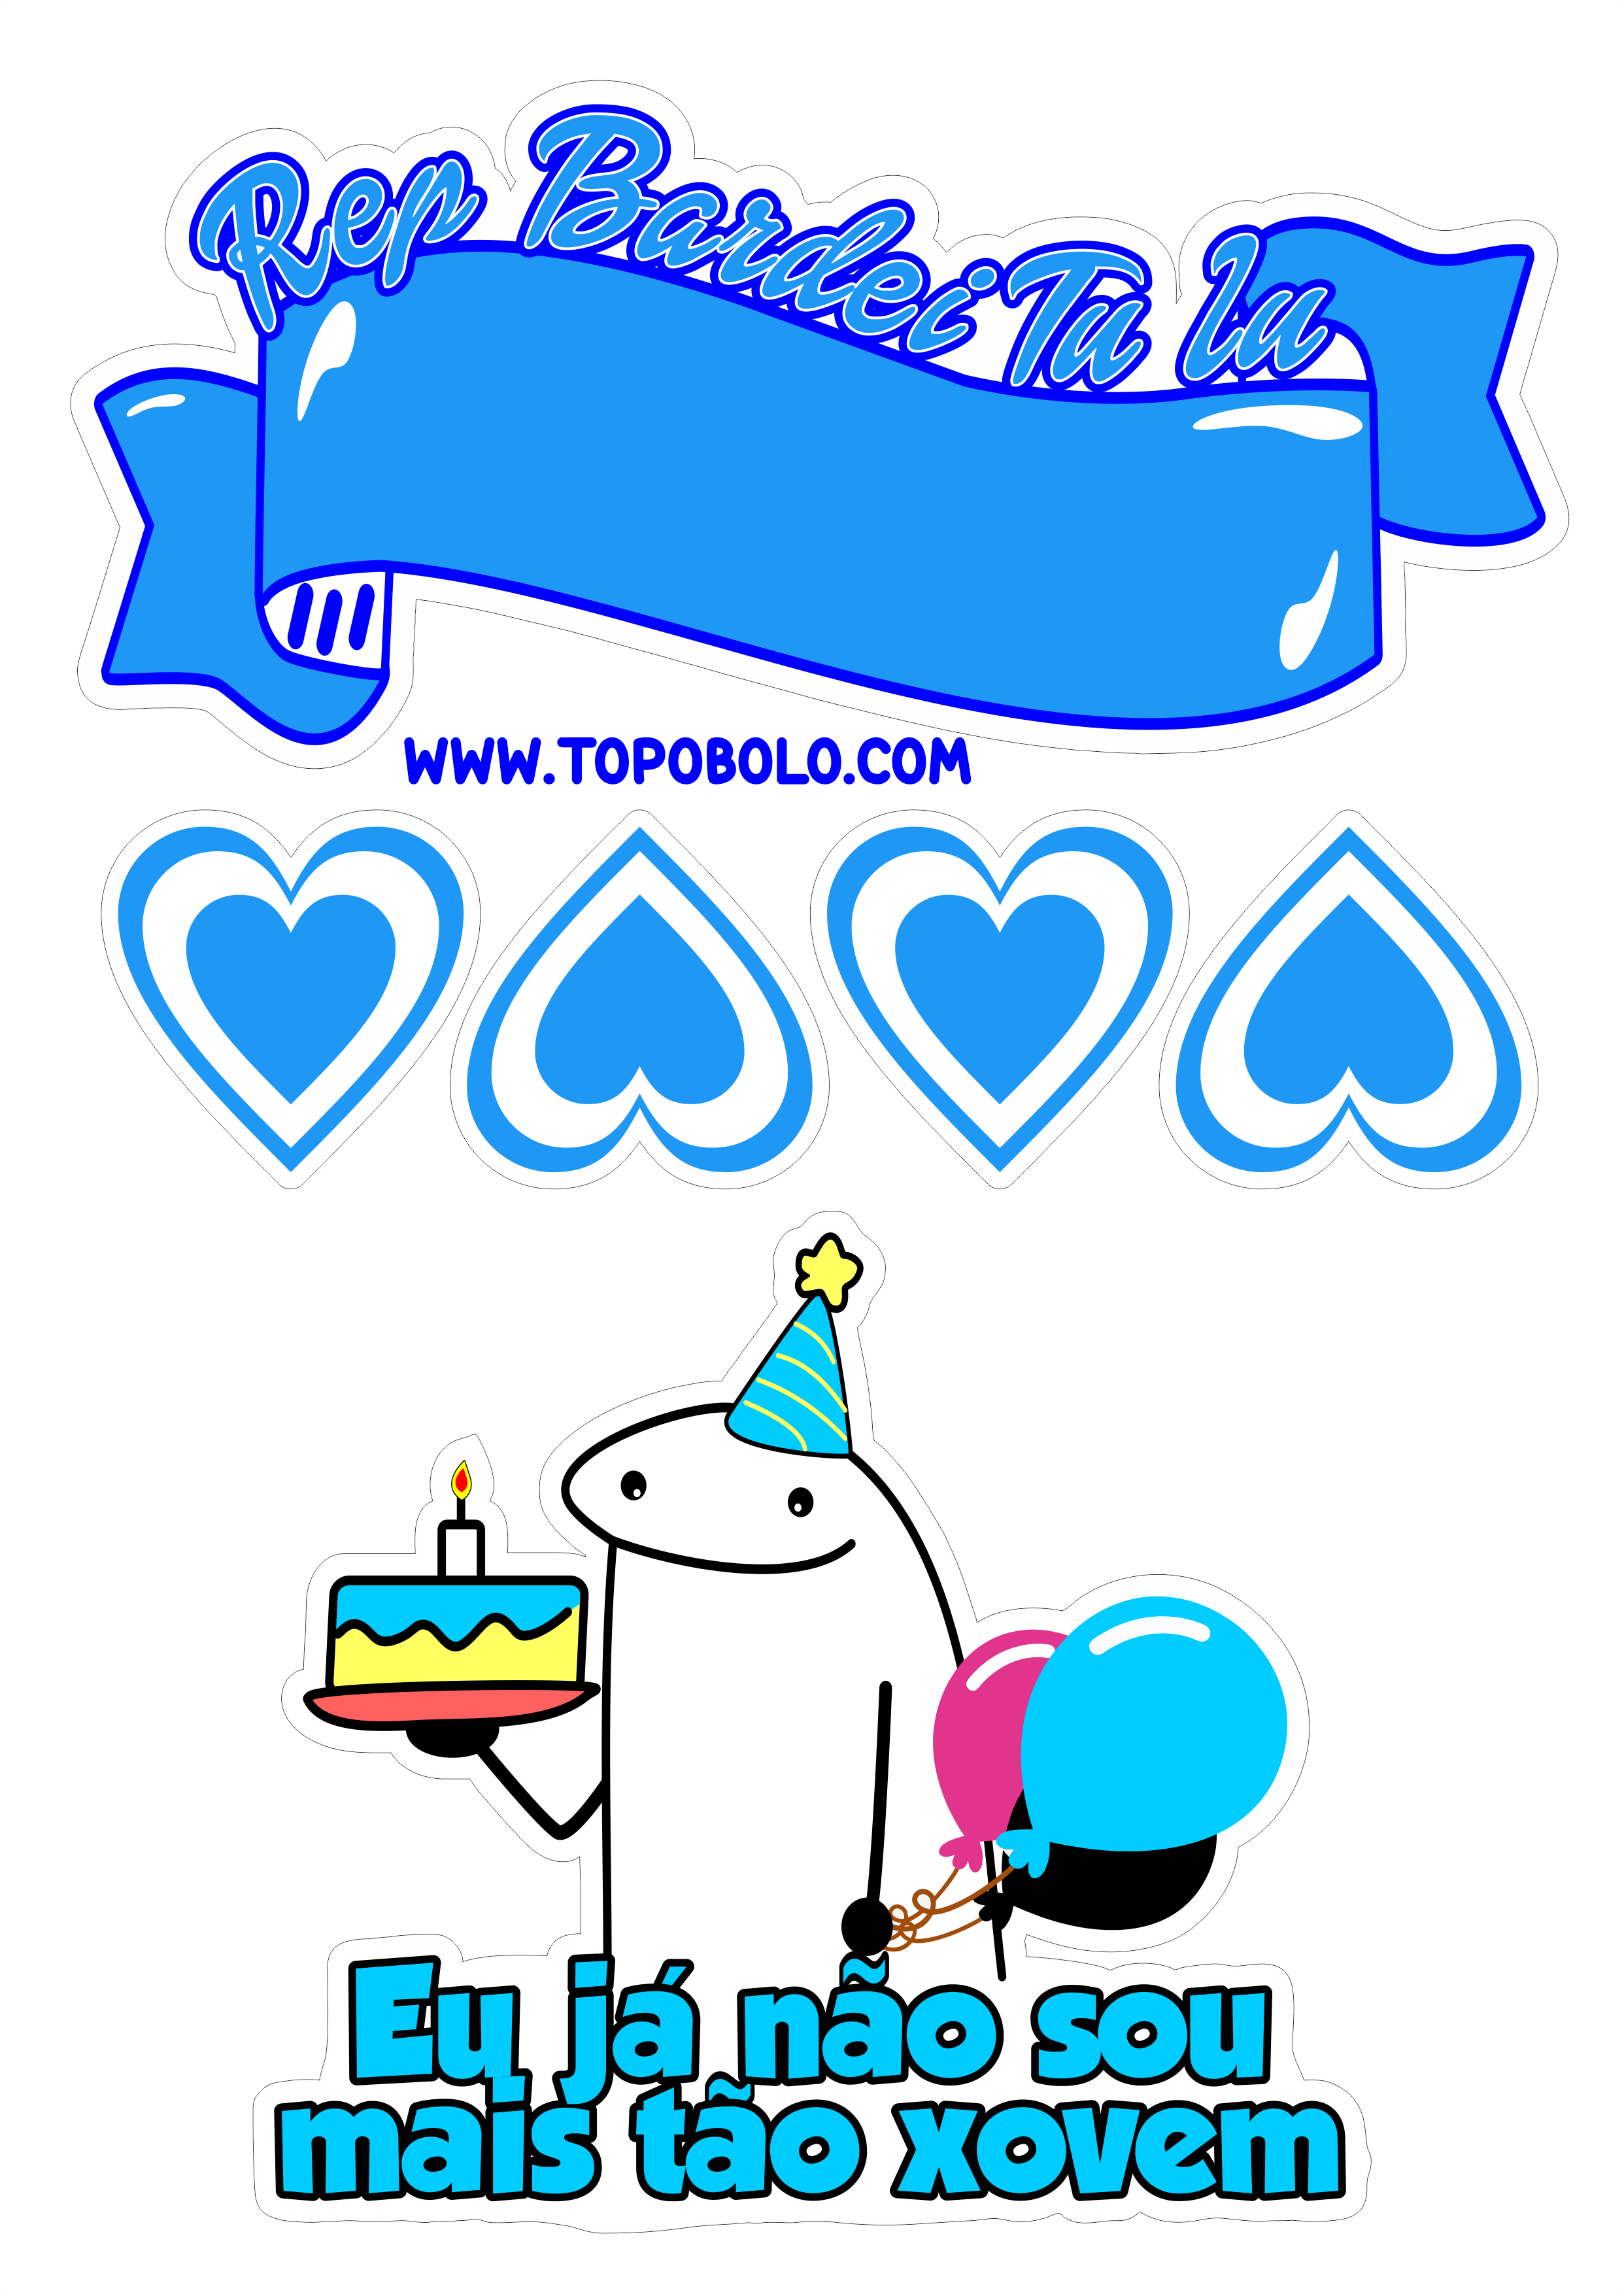 Happy Birthday topo de bolo flork of cows figurinhas engraçadas azul artes gráficas png